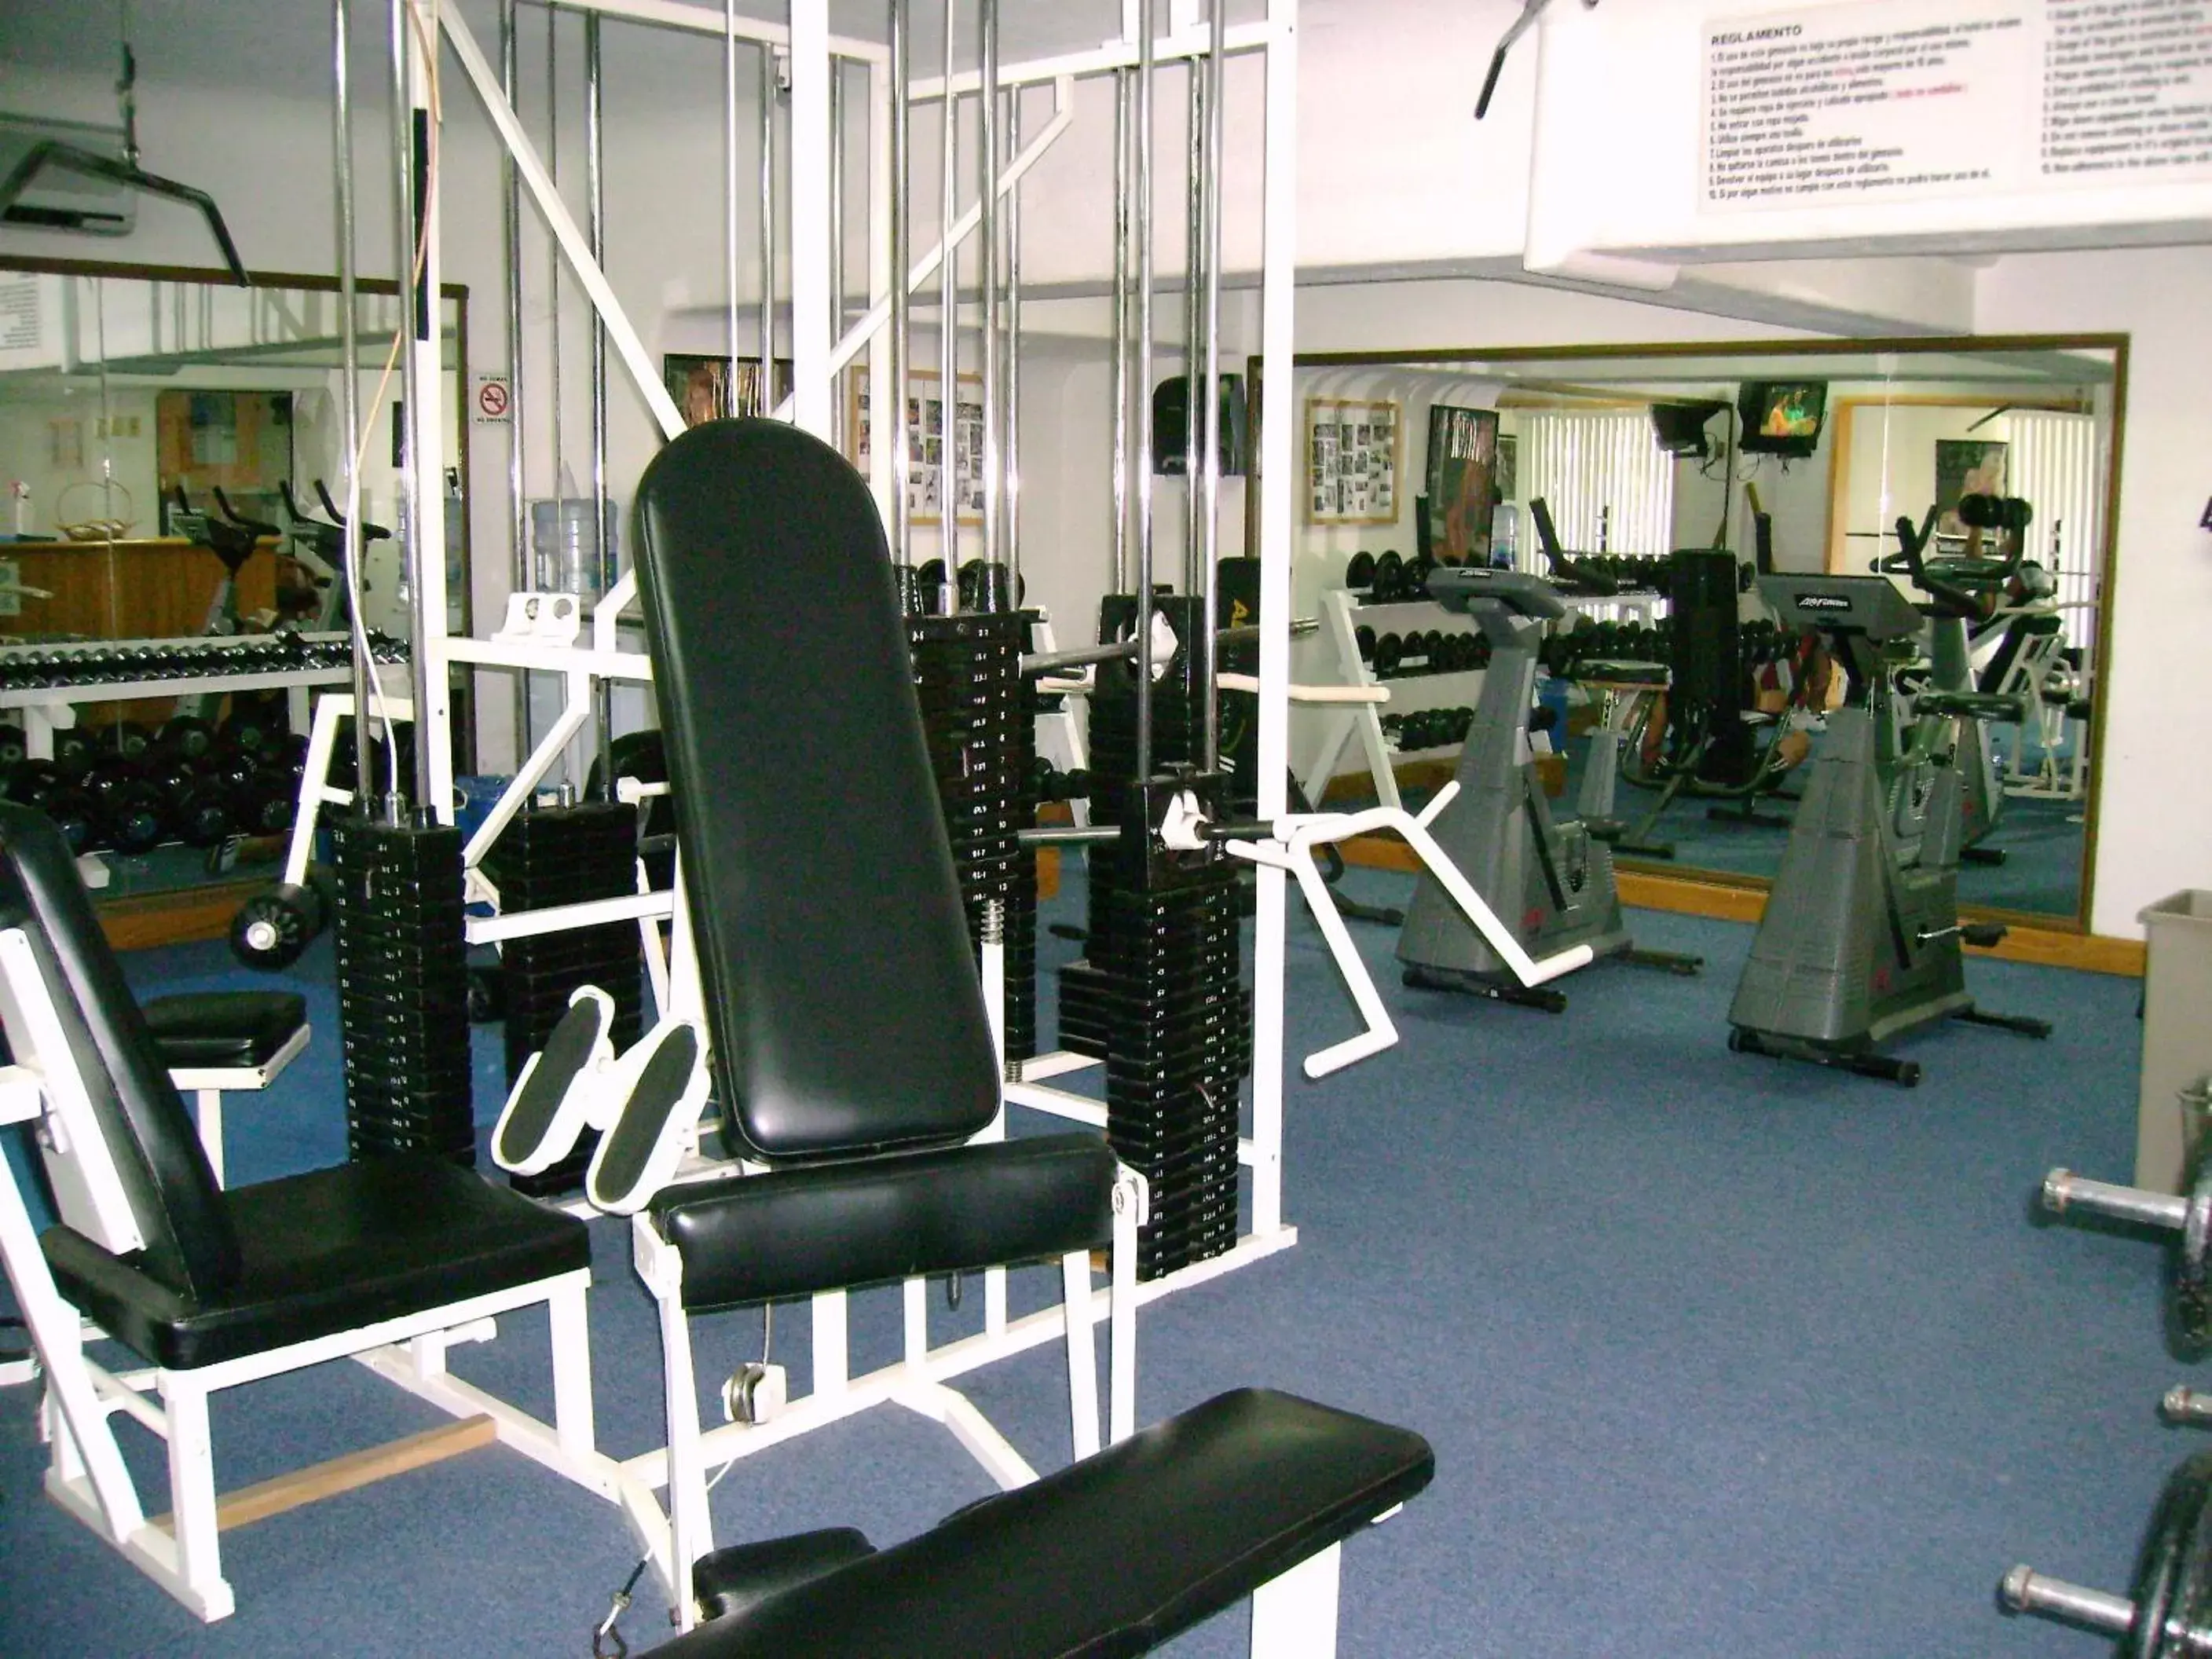 Fitness centre/facilities, Fitness Center/Facilities in Canto del Sol Puerto Vallarta All Inclusive